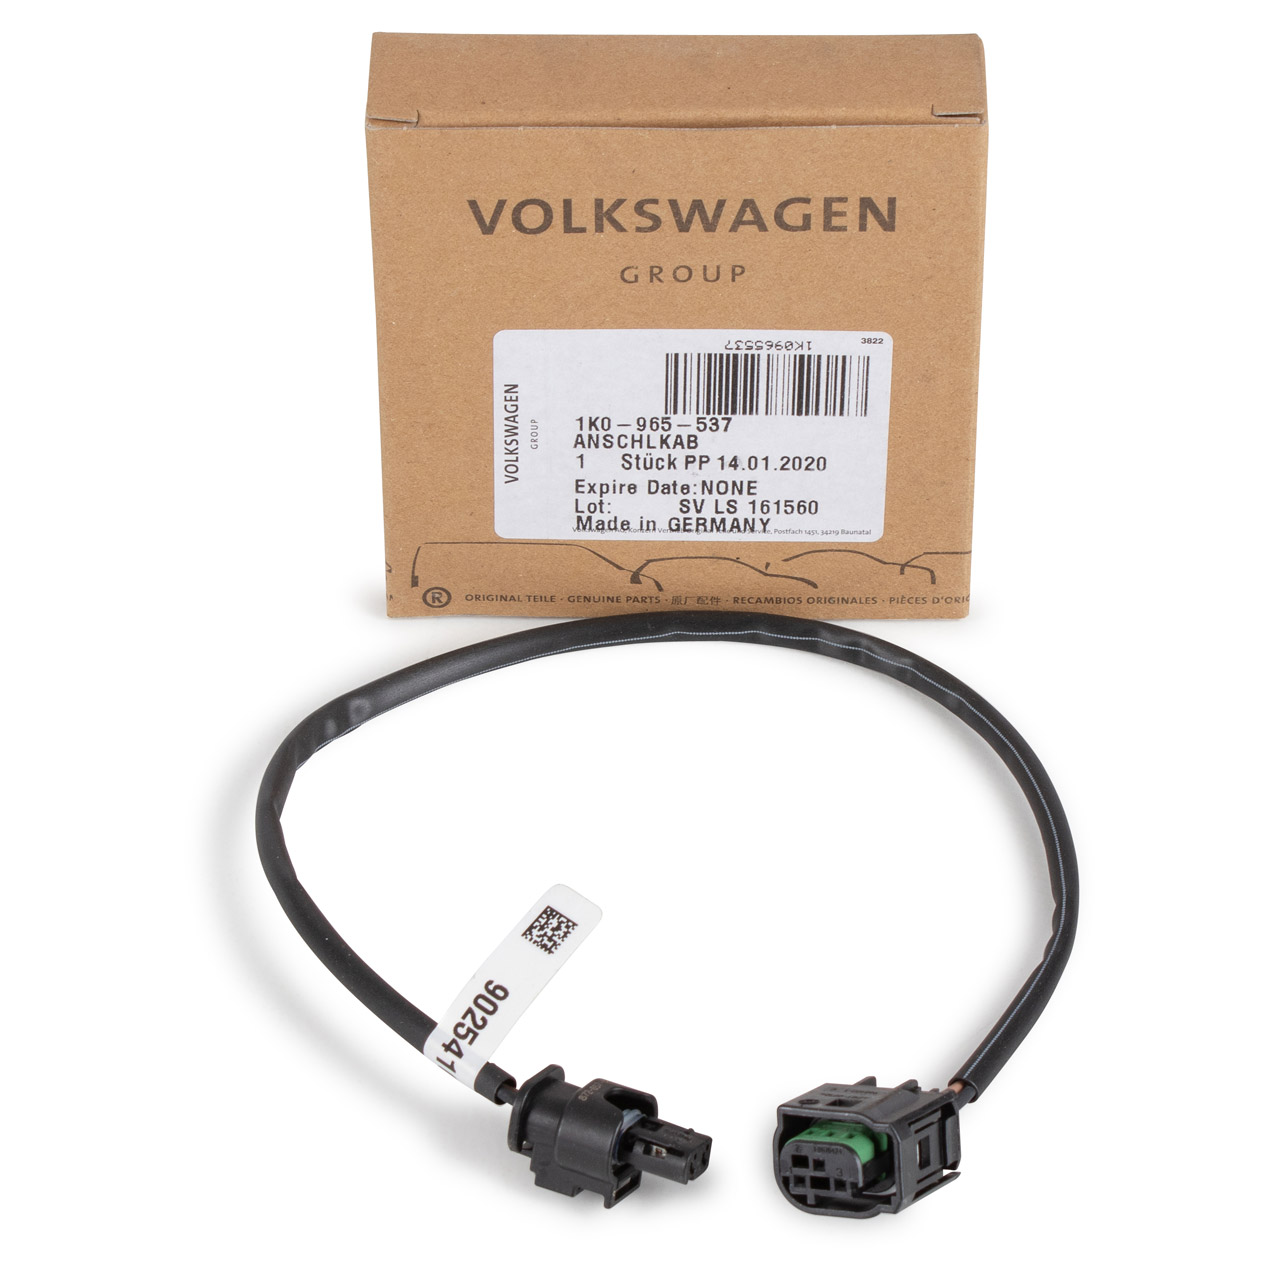 Wonen Elektrisch Raap ORIGINAL VW Kabel Rep.-Satz Stecker Zusatzwasserpumpe Golf 5 6 7 Passat  Tiguan 1K0965537 | myparto